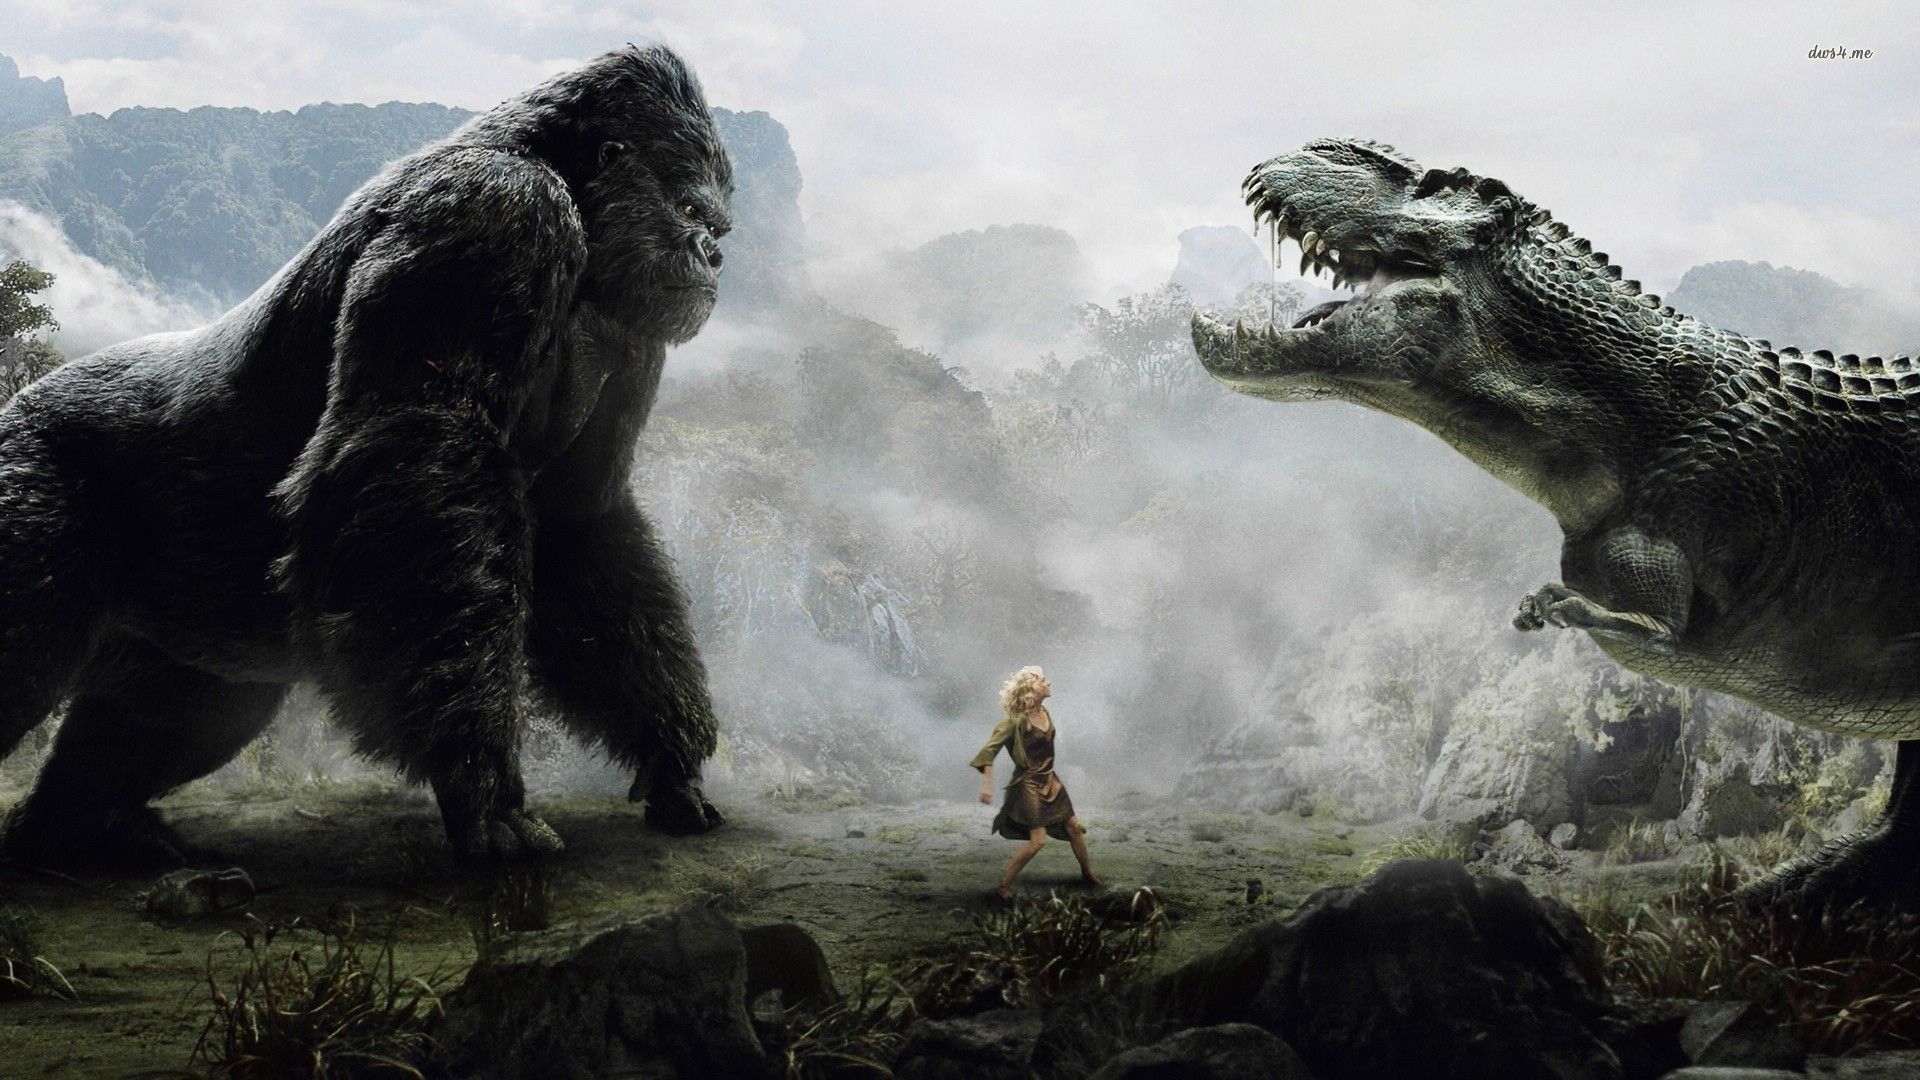 Godzilla Vs King Kong Wallpaper Free Godzilla Vs King Kong Background